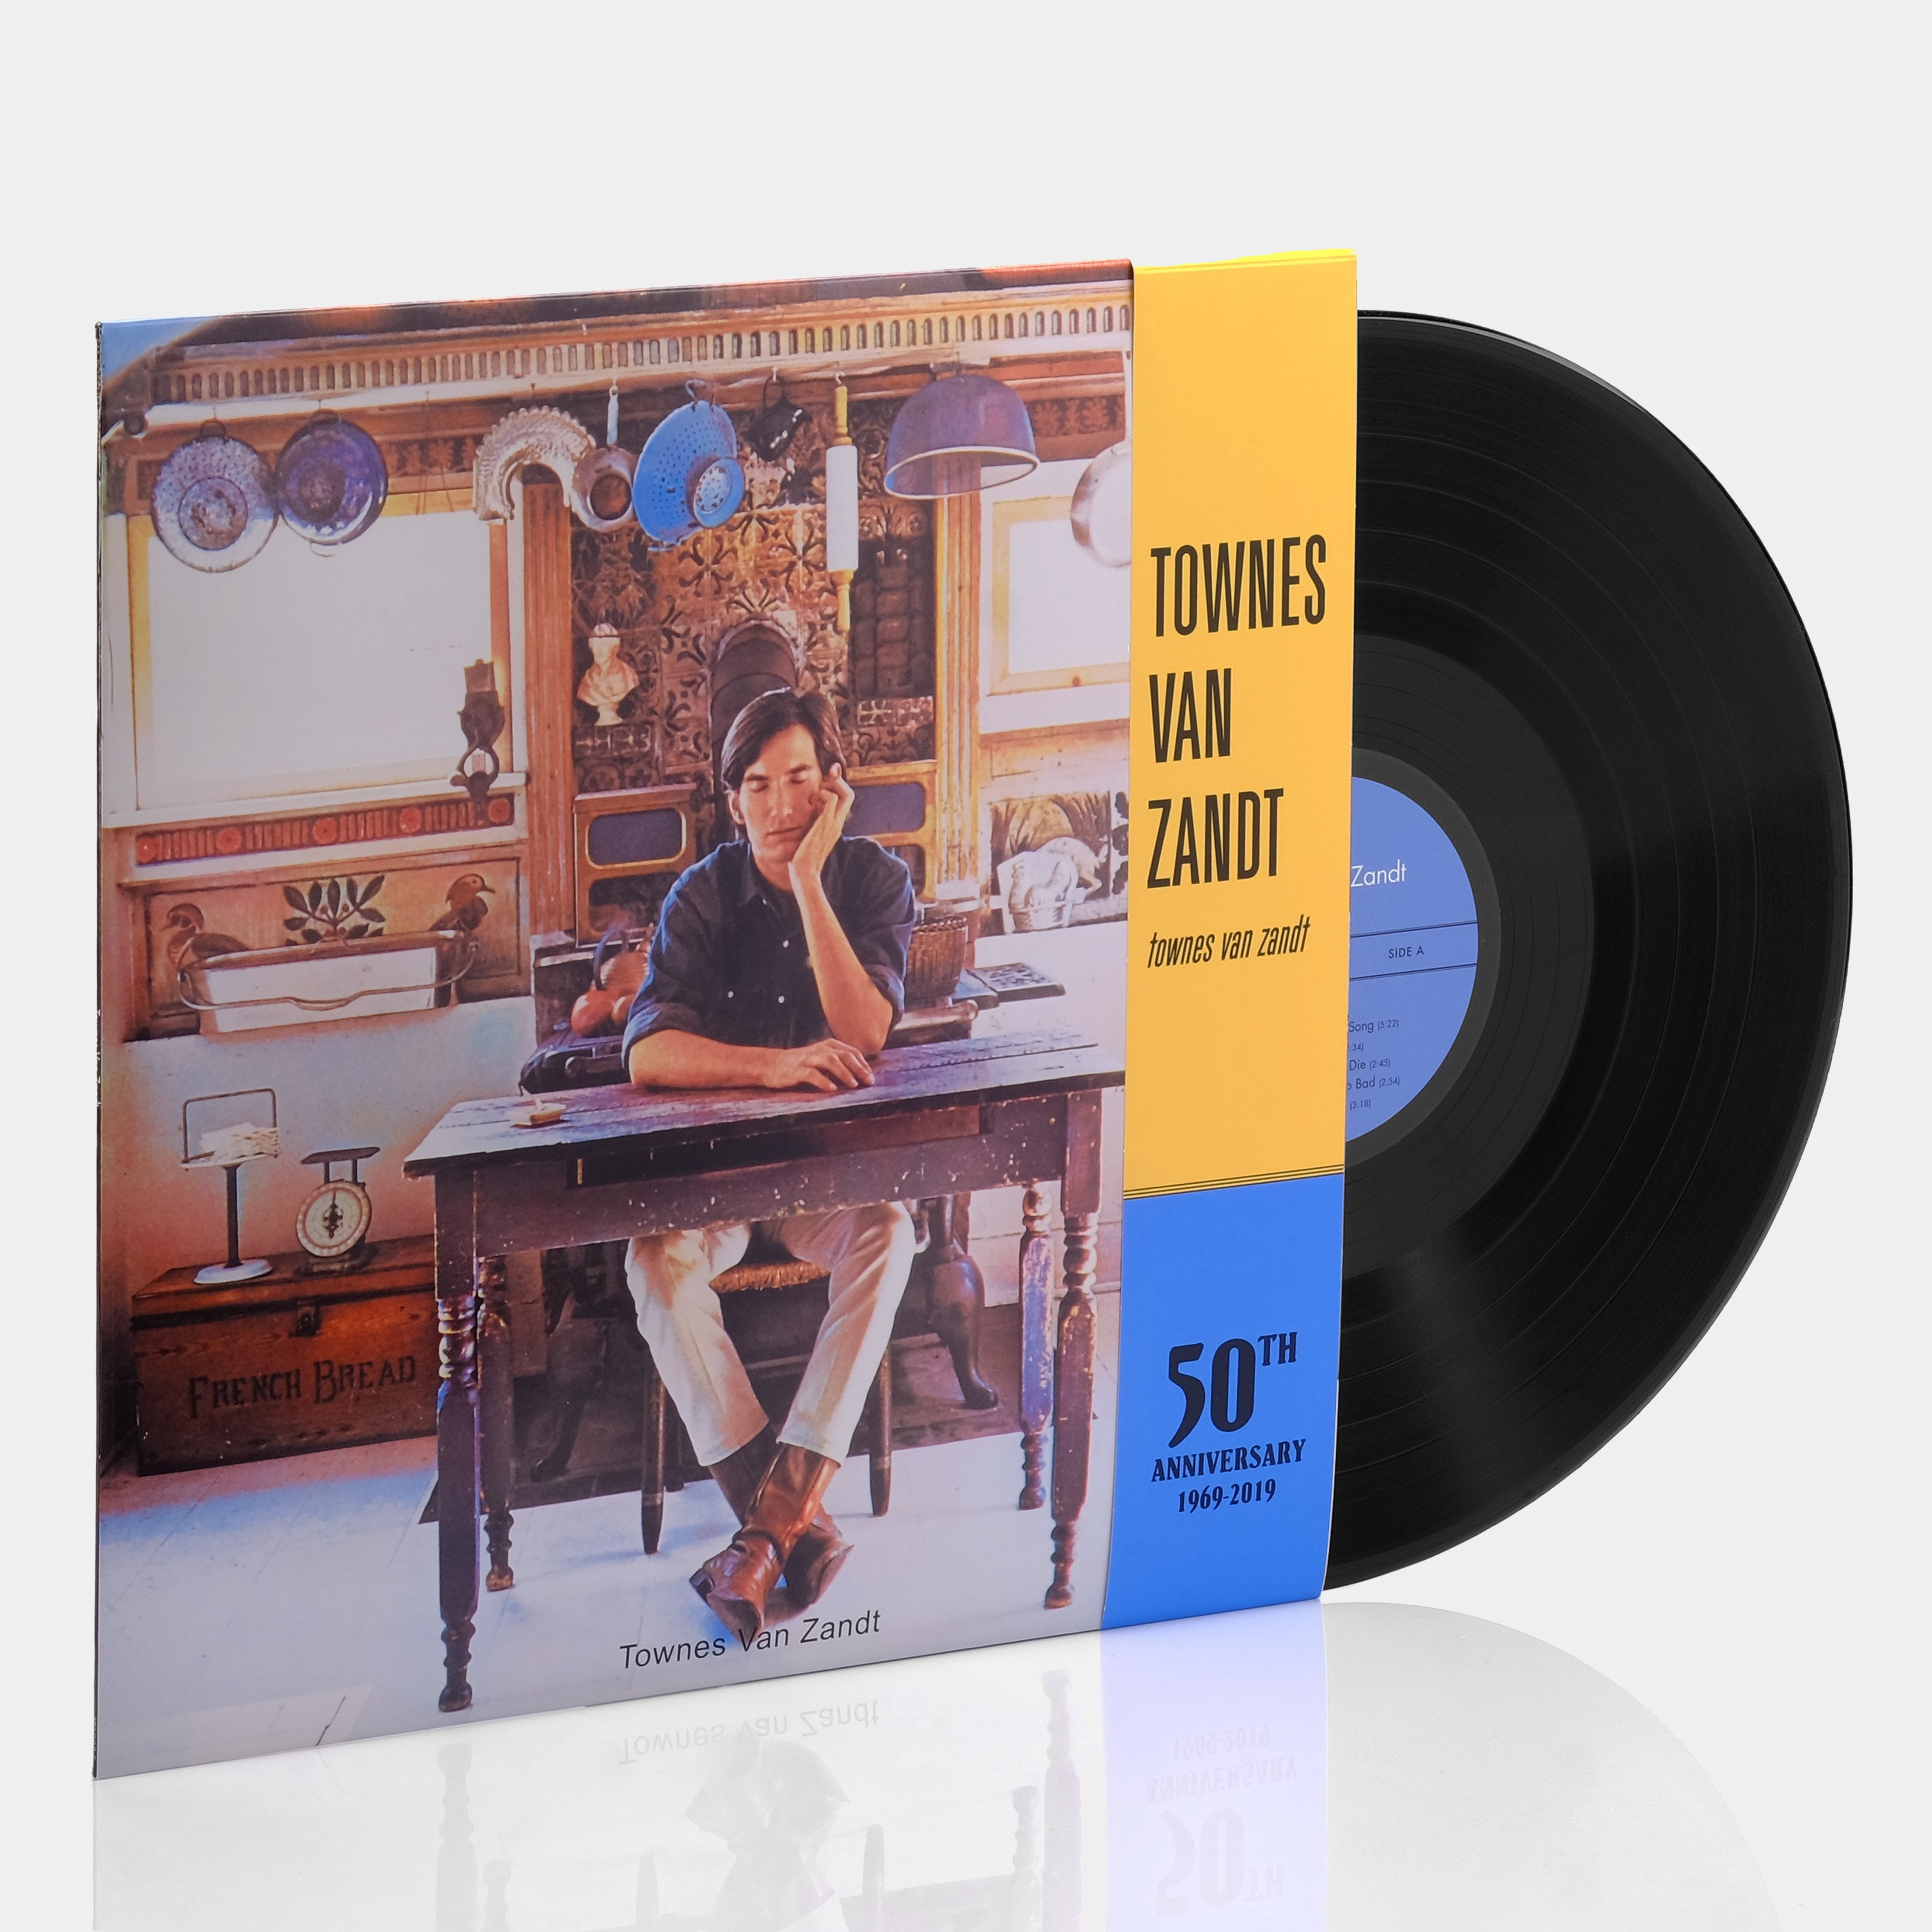 Townes Van Zandt - Townes Van Zandt (50th Anniversary Edition) LP Vinyl Record